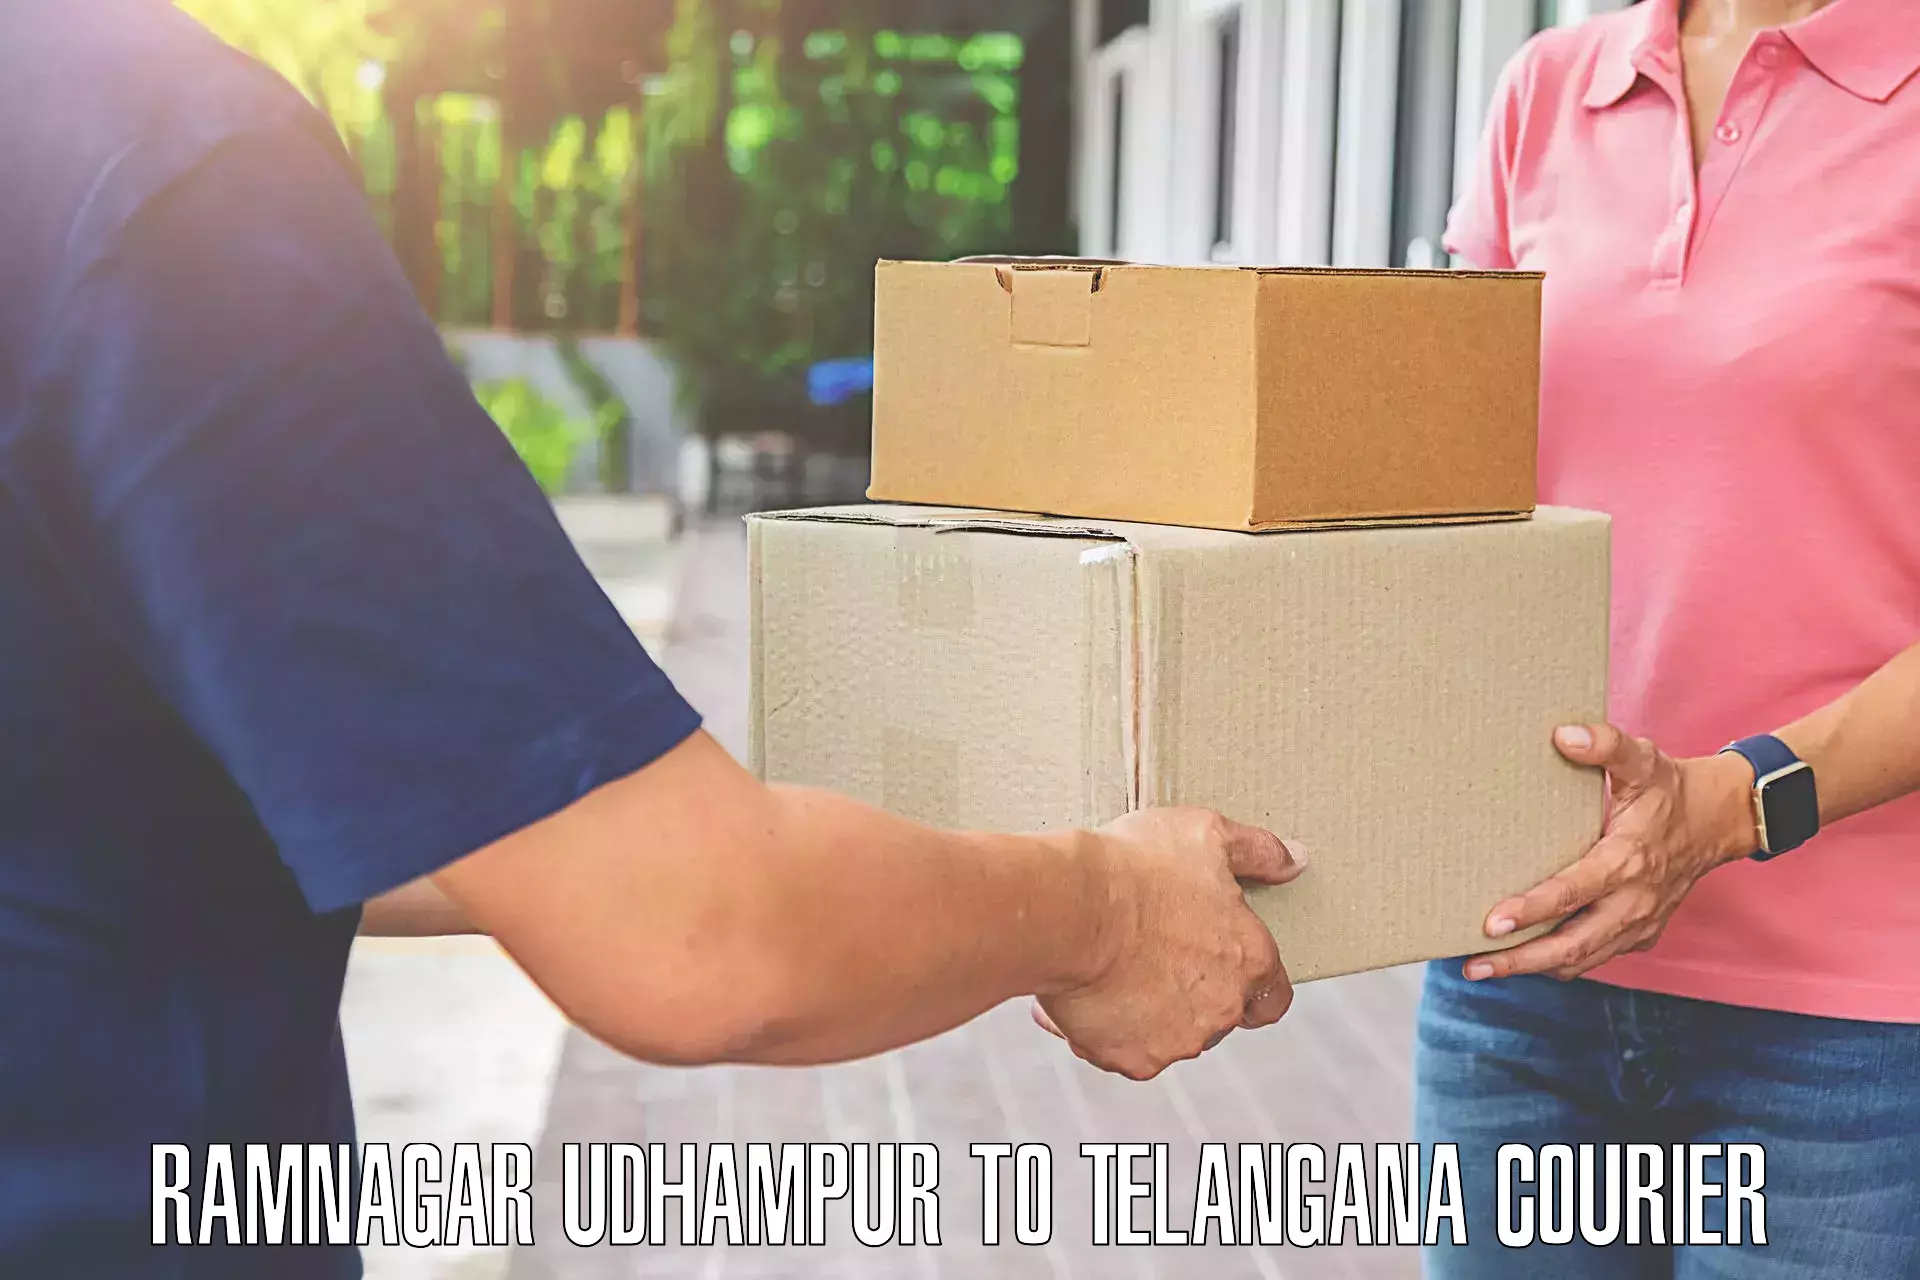 Customized luggage delivery Ramnagar Udhampur to Wyra